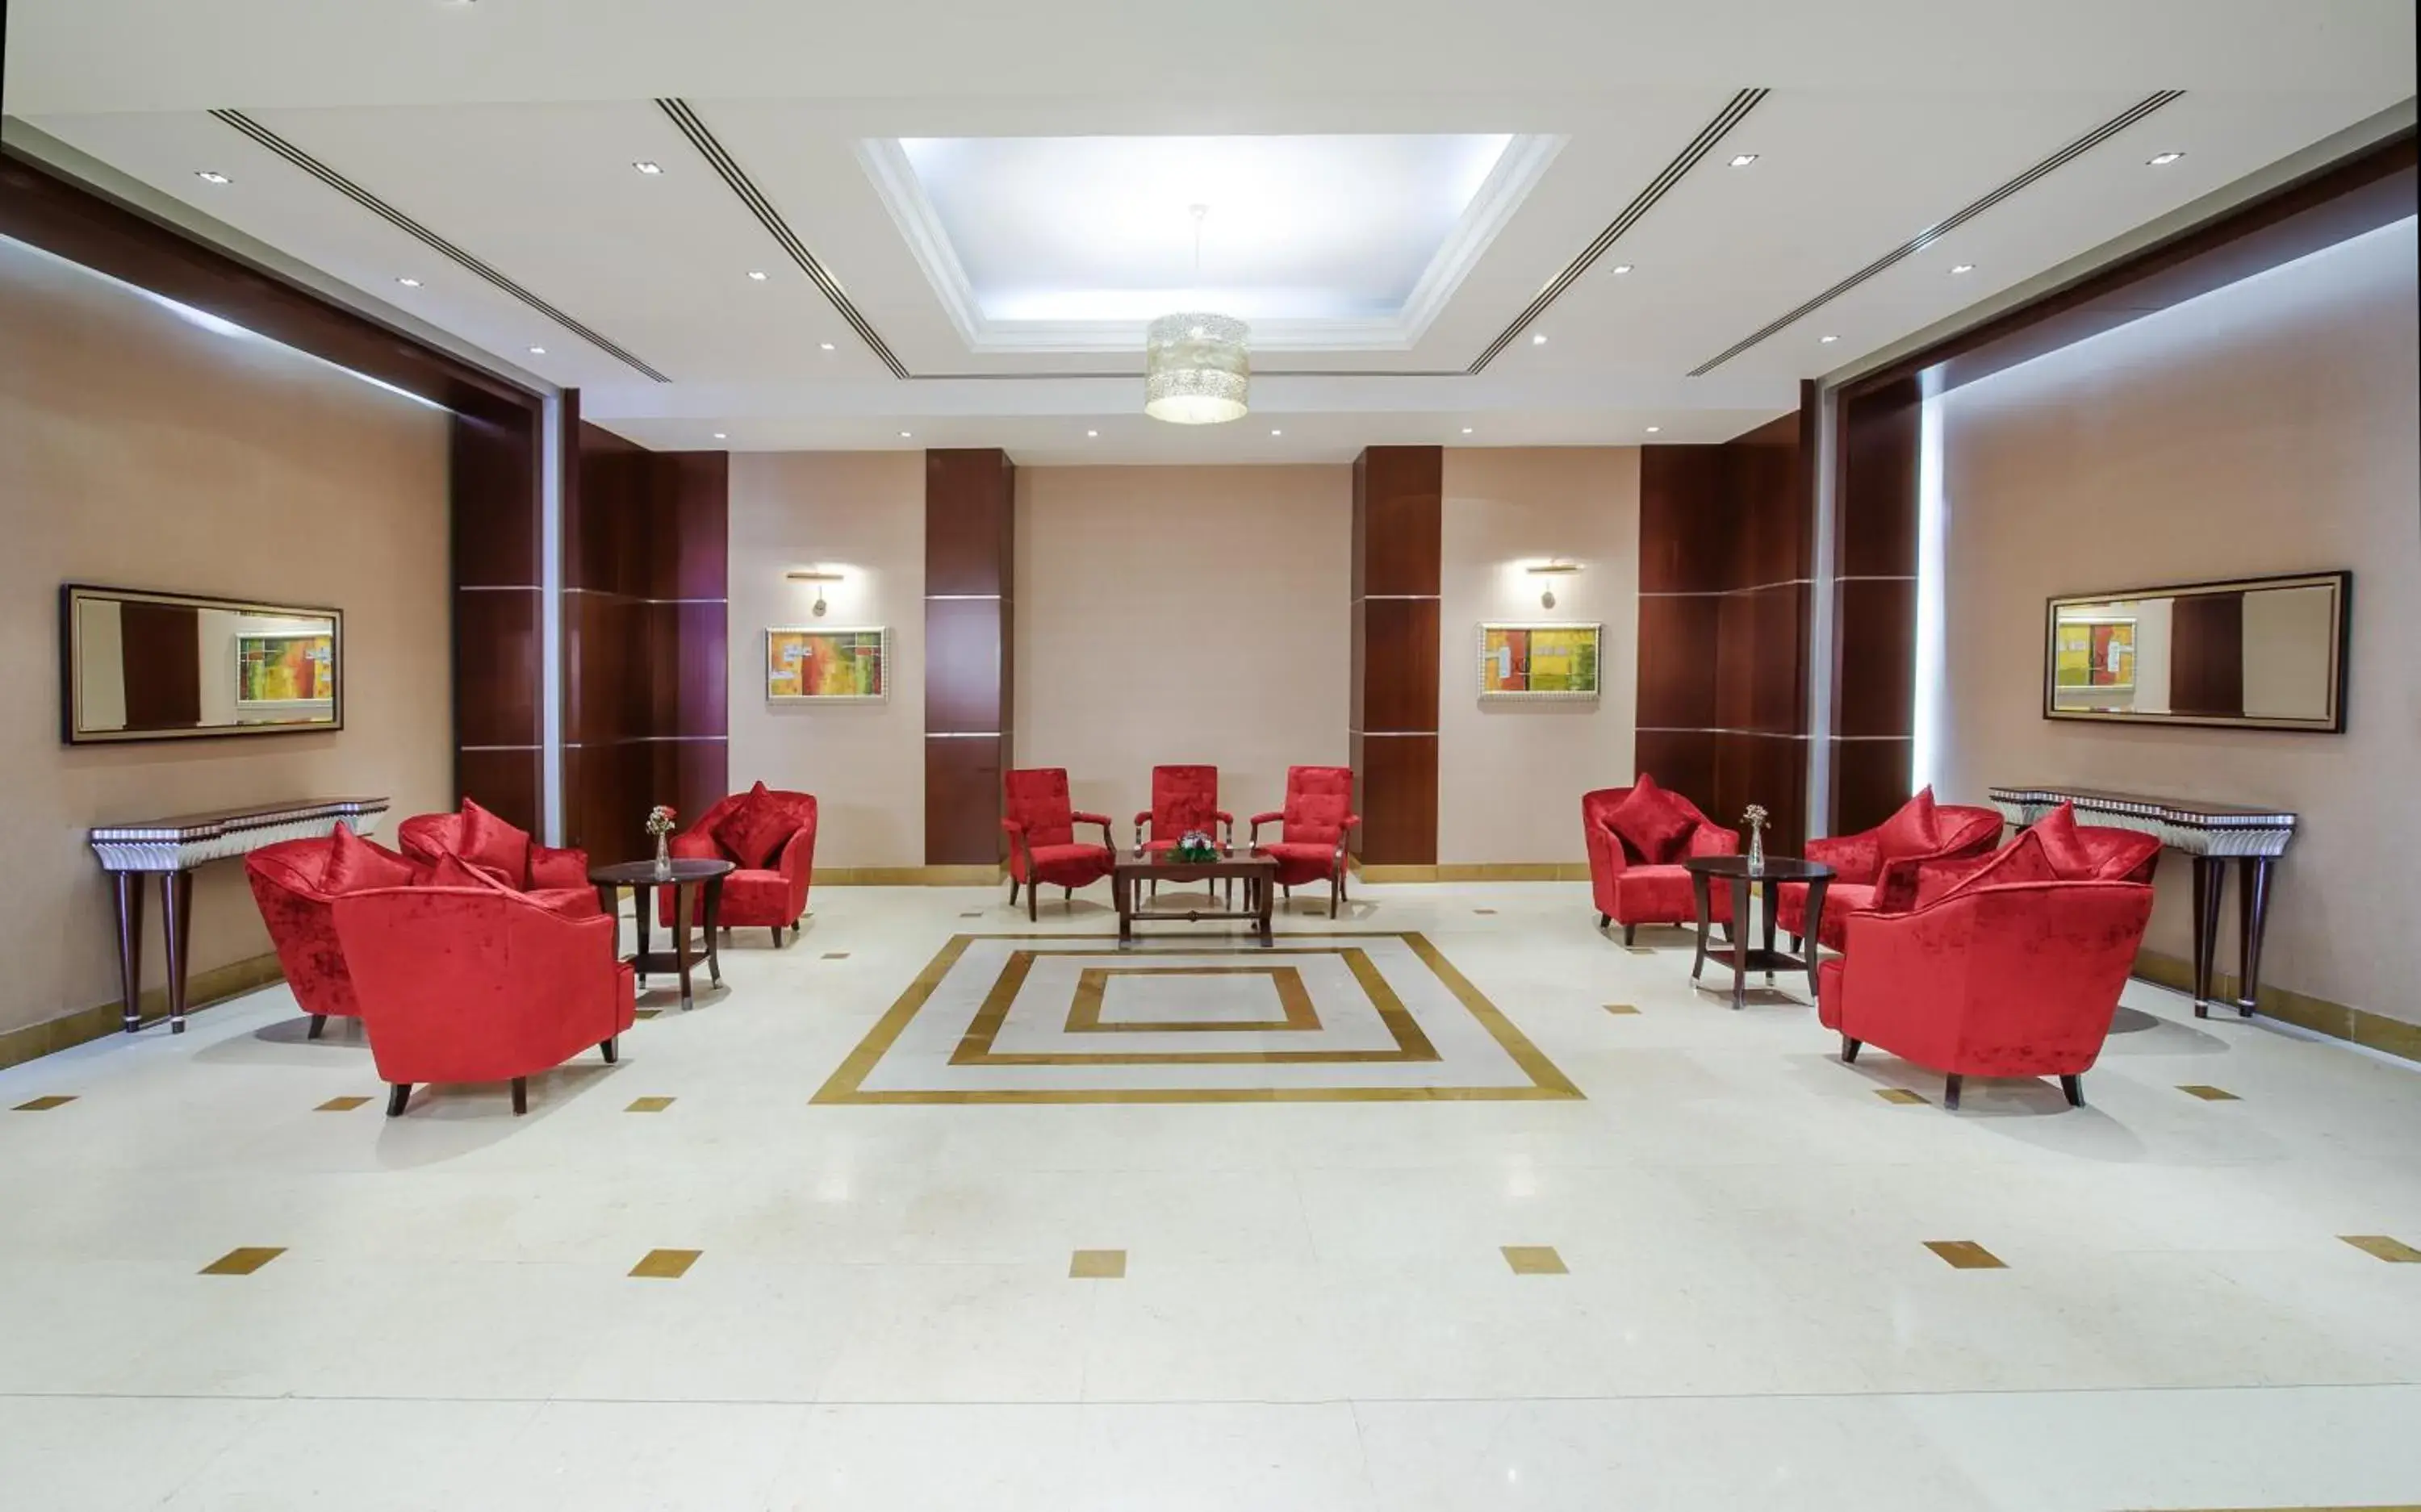 Banquet/Function facilities, Lobby/Reception in Concorde Fujairah Hotel